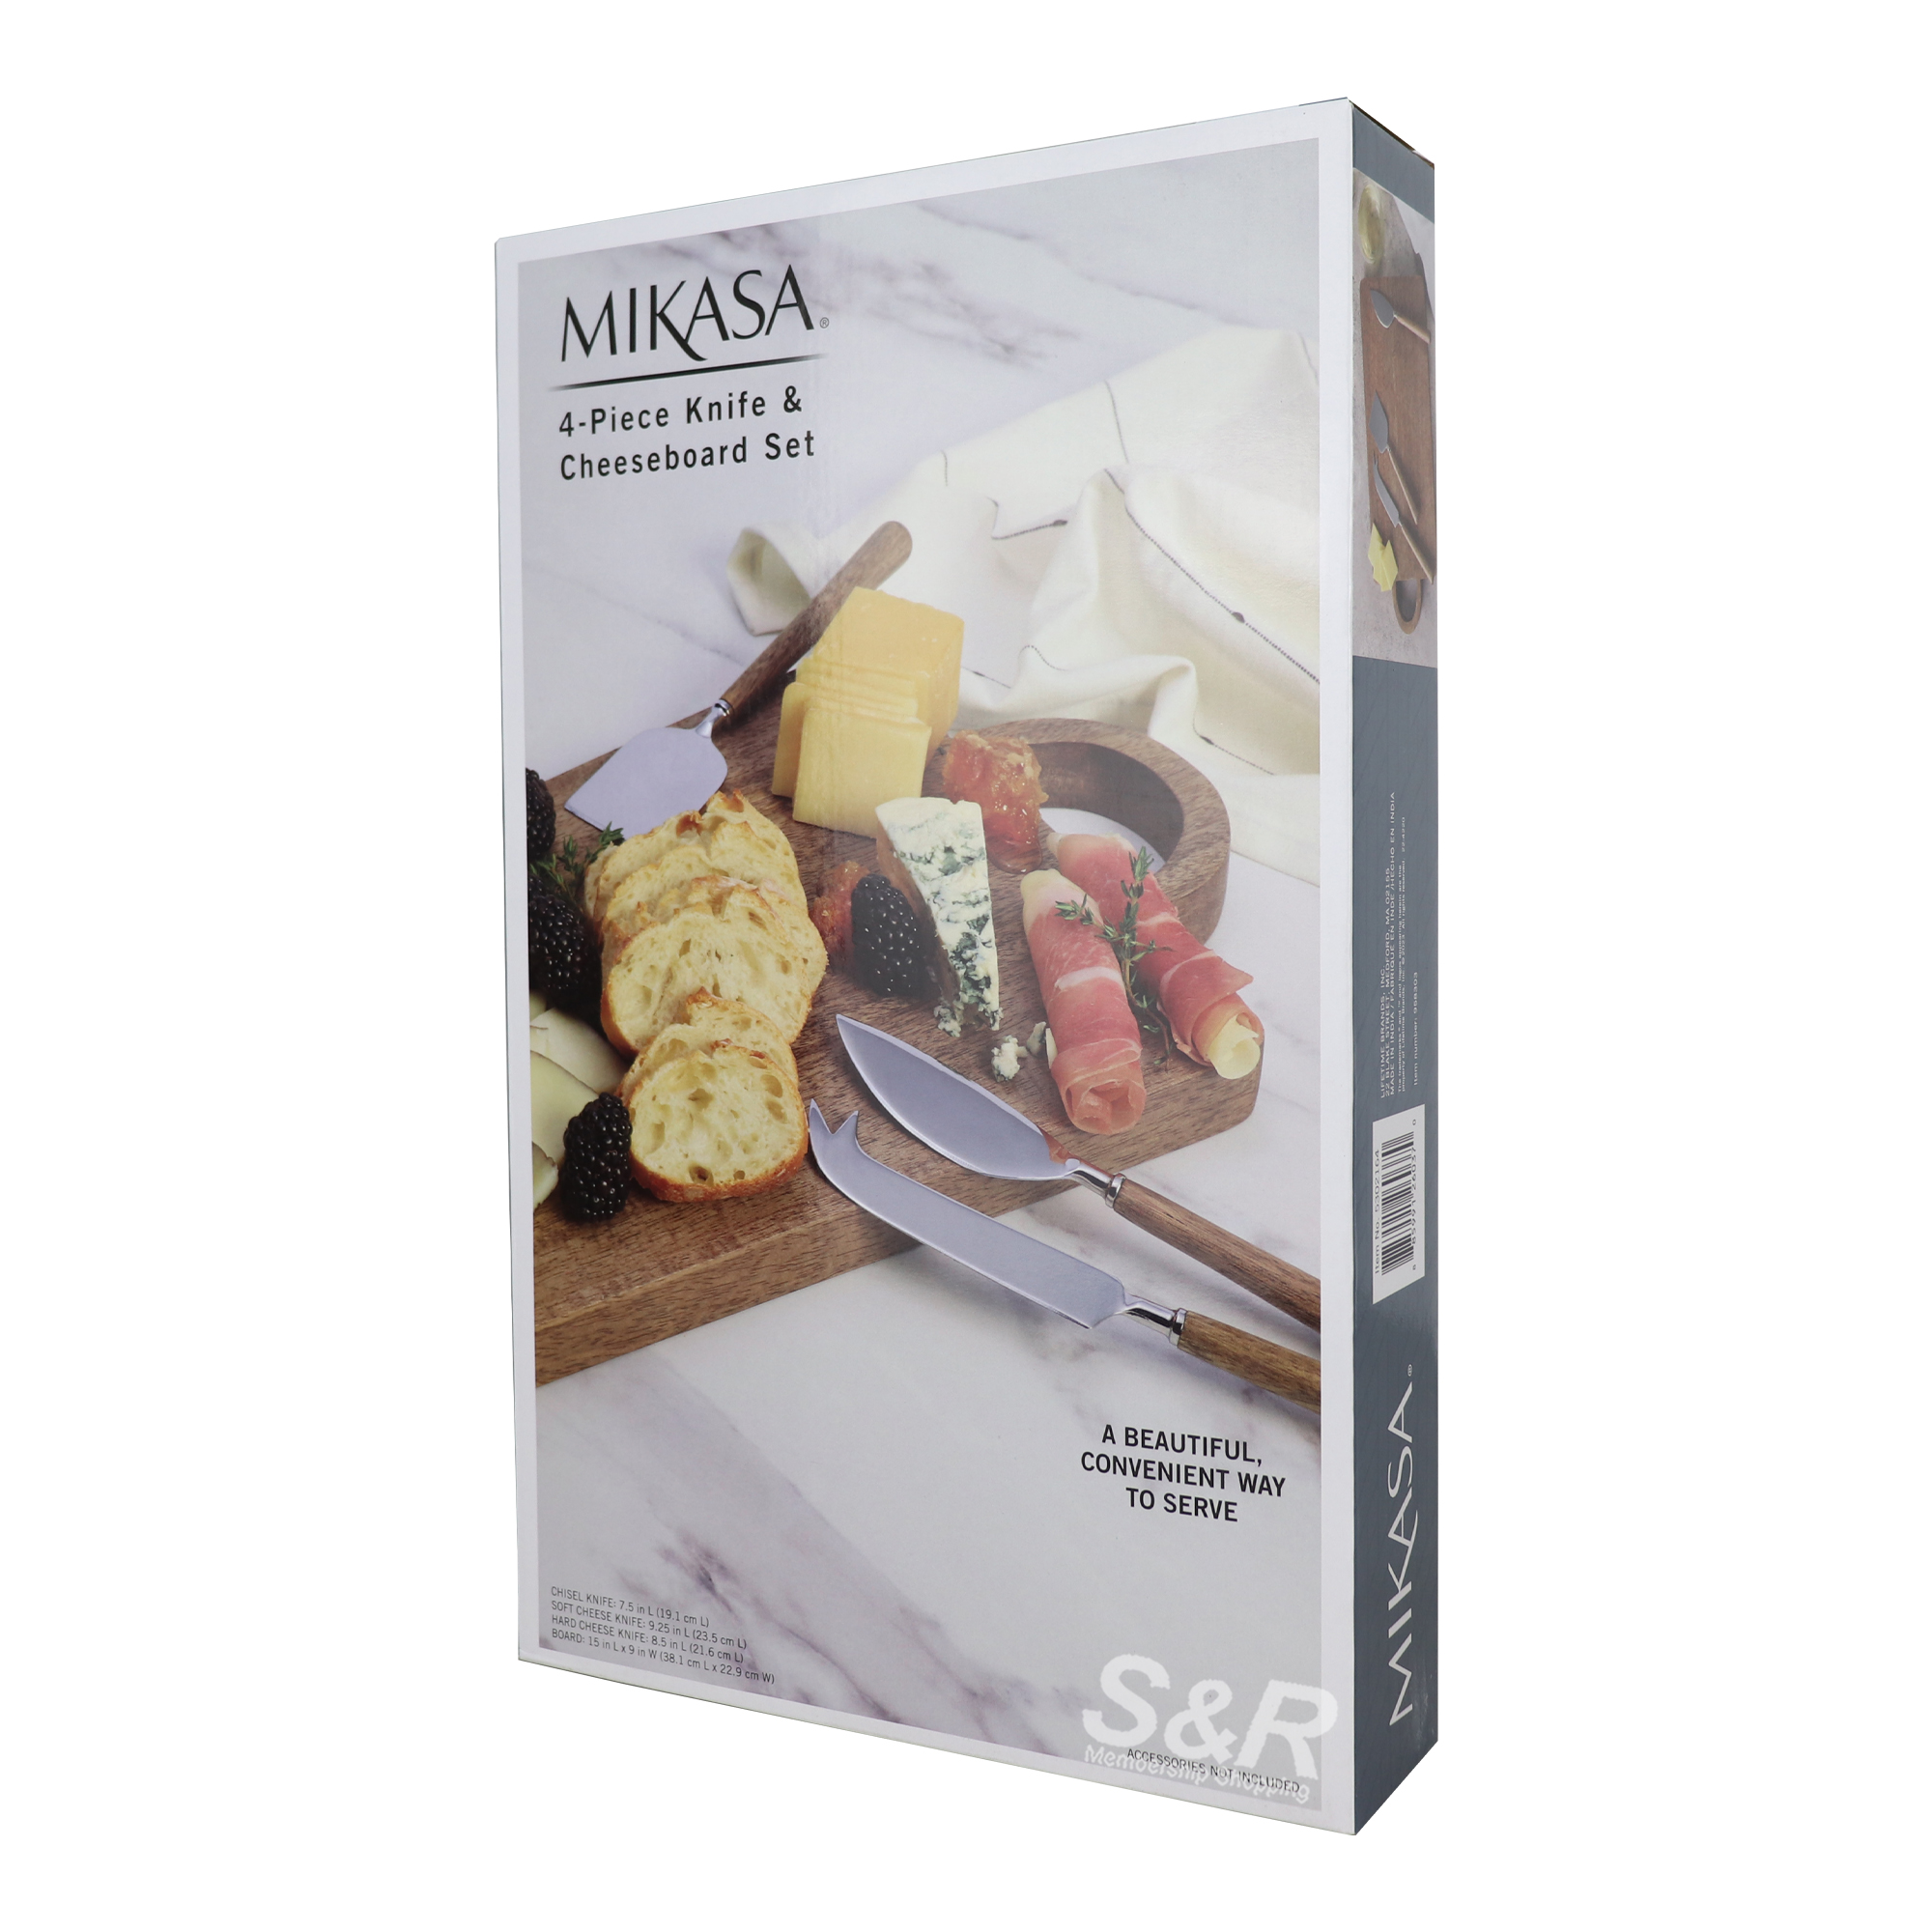 Mikasa 4pcs Knife and Cheeseboard Set